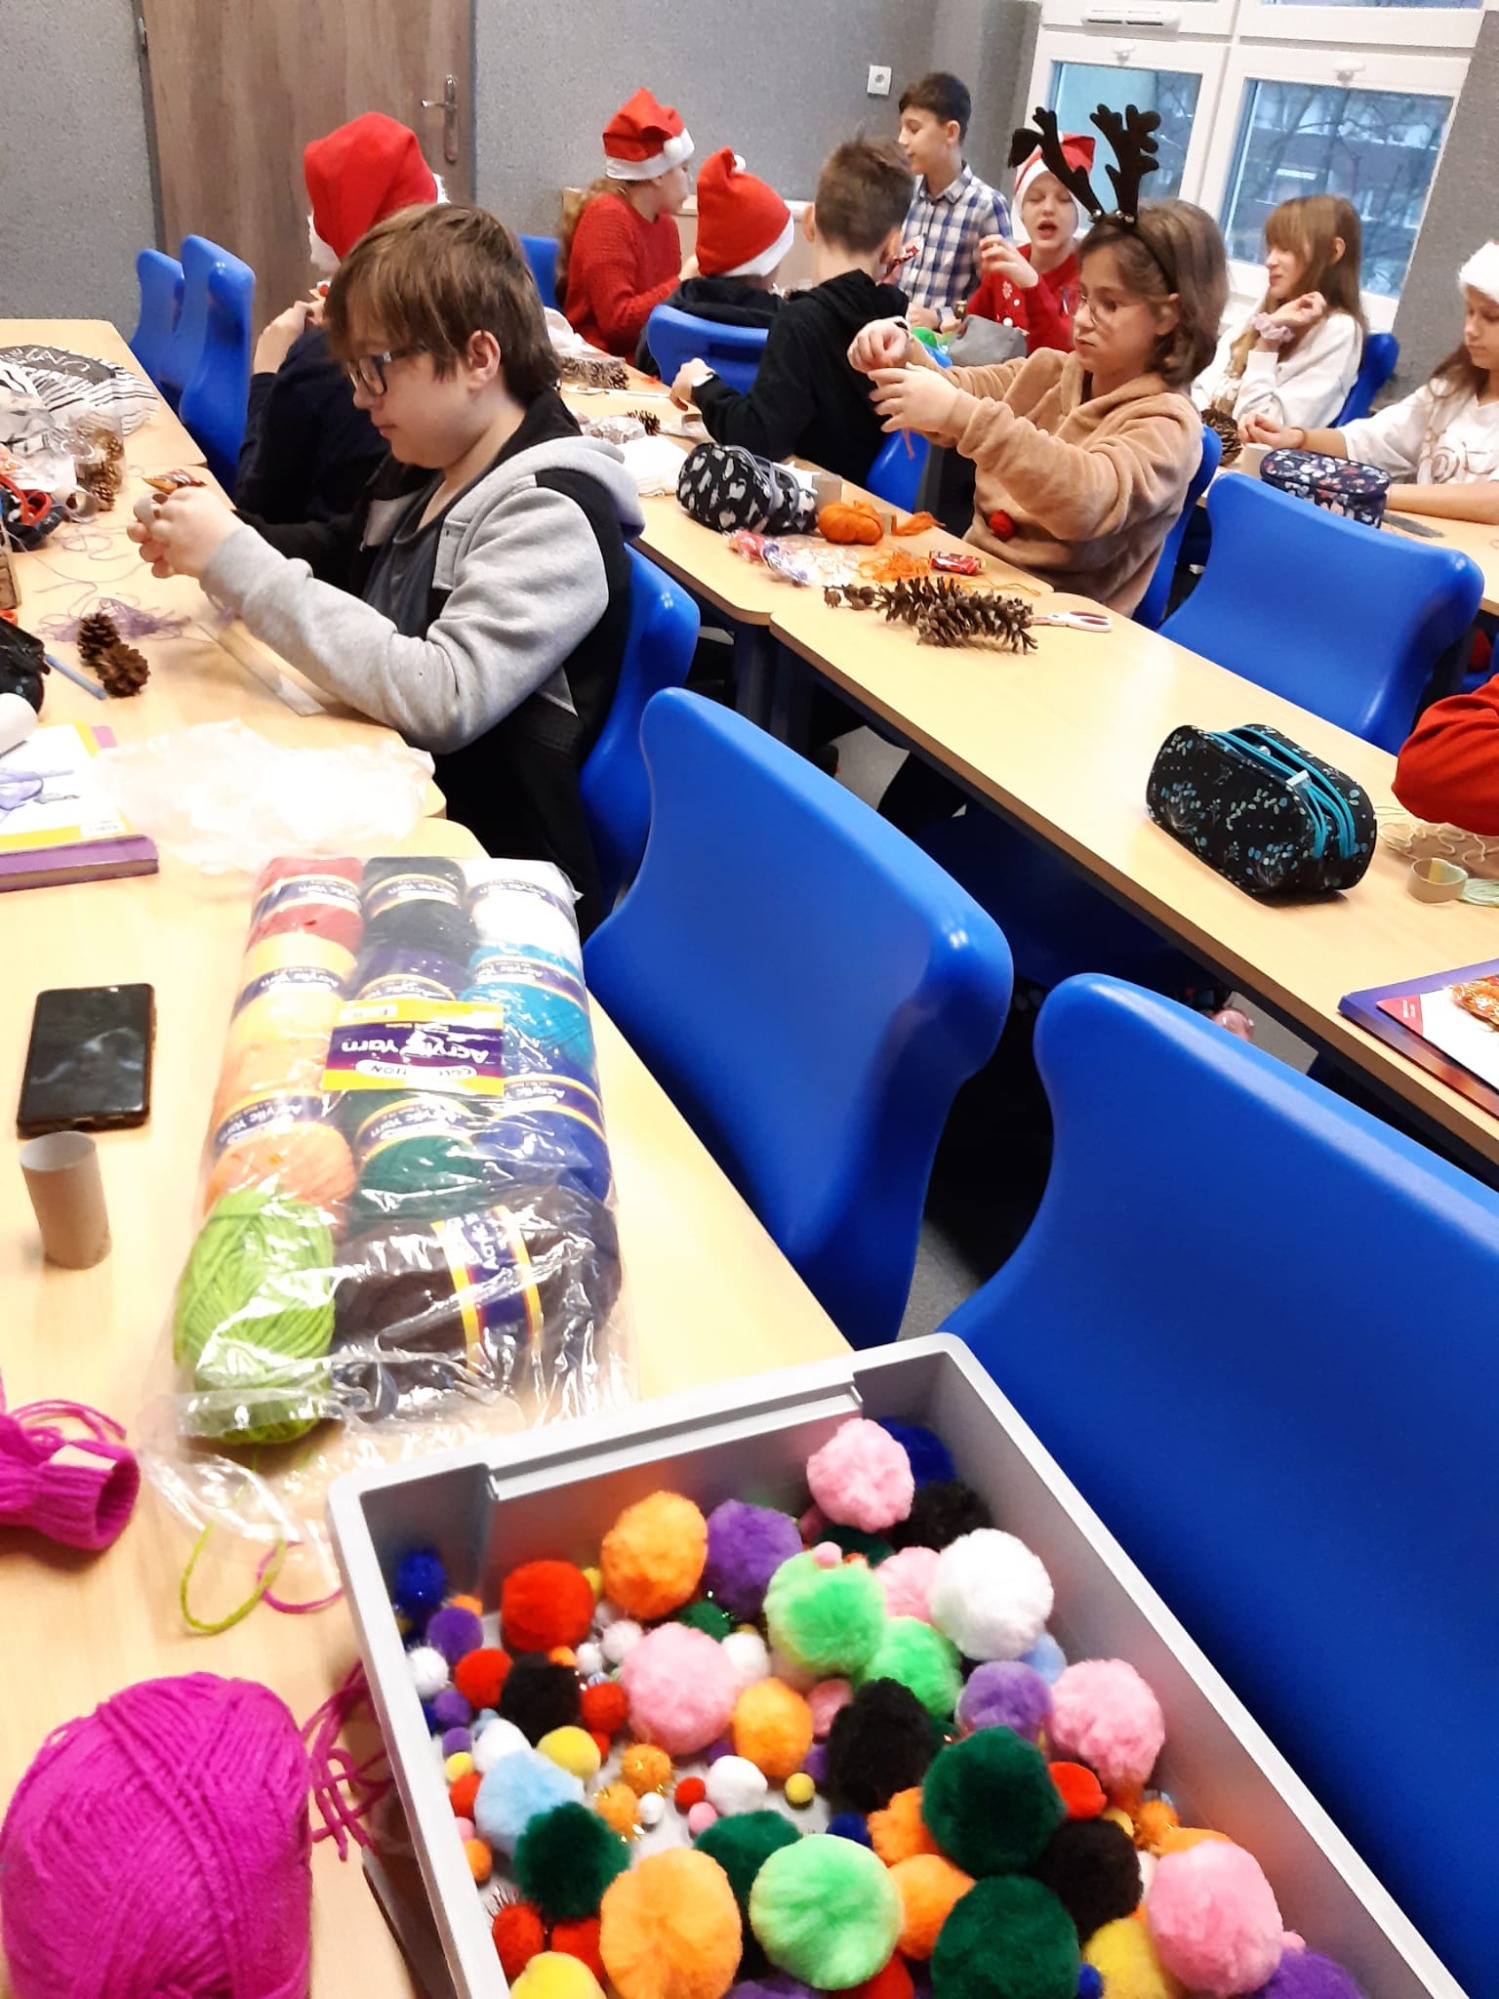 W klasie dzieci pracują przy ławkach w świątecznych czapkach. Na pierwszym planie na stole leżą kolorowe włóczki i pompony.